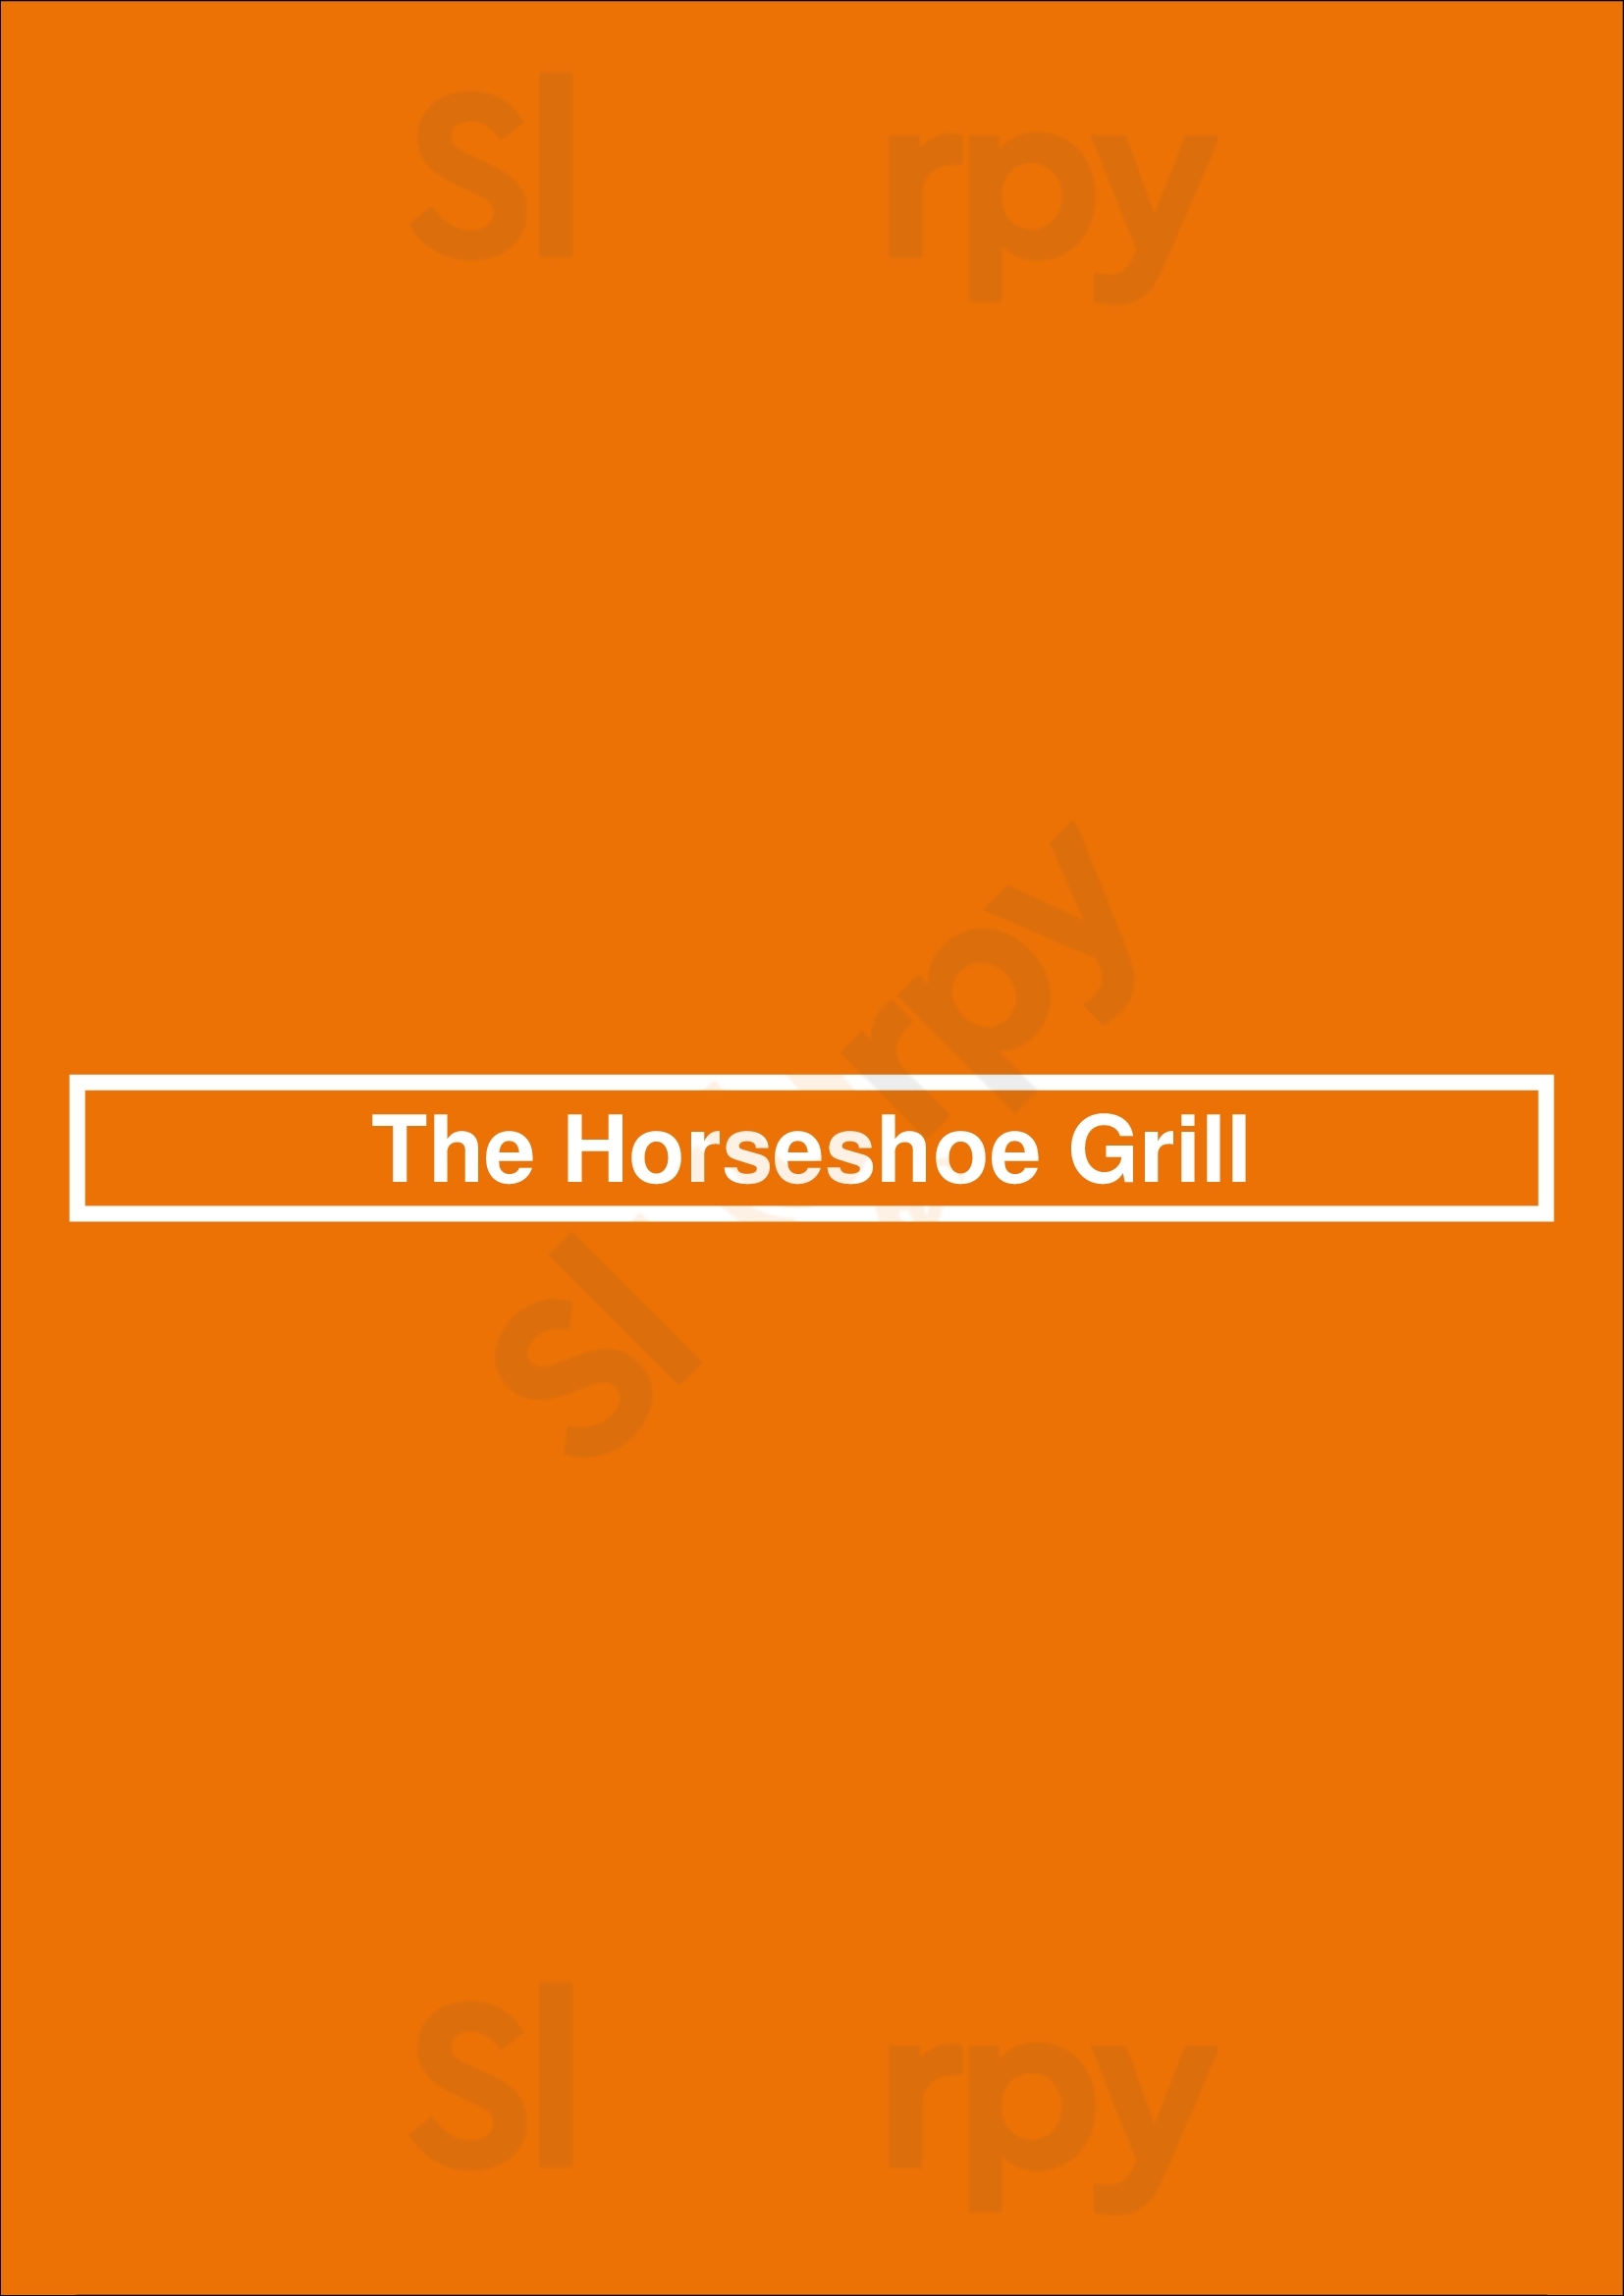 The Horseshoe Grill Tucson Menu - 1